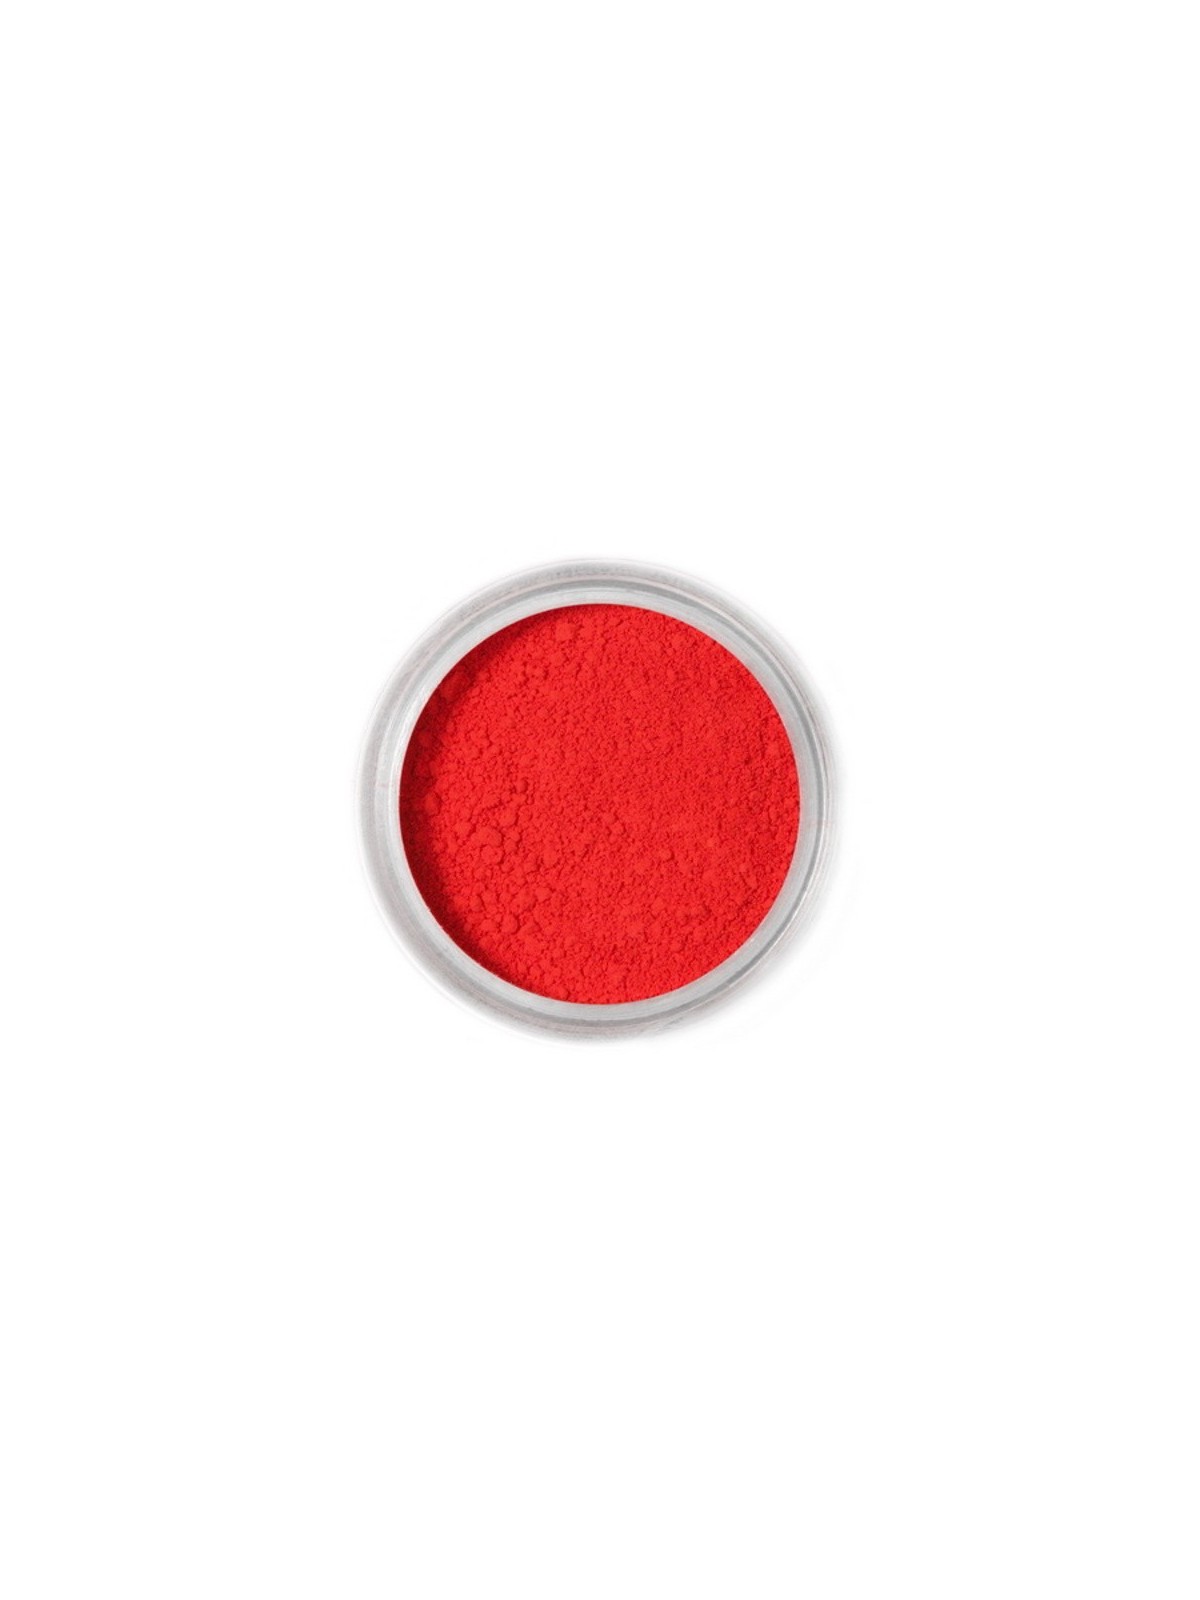 Essbaren Puderfarbe Fractal - Cherry Red, Csereszney piros (2,5 g)